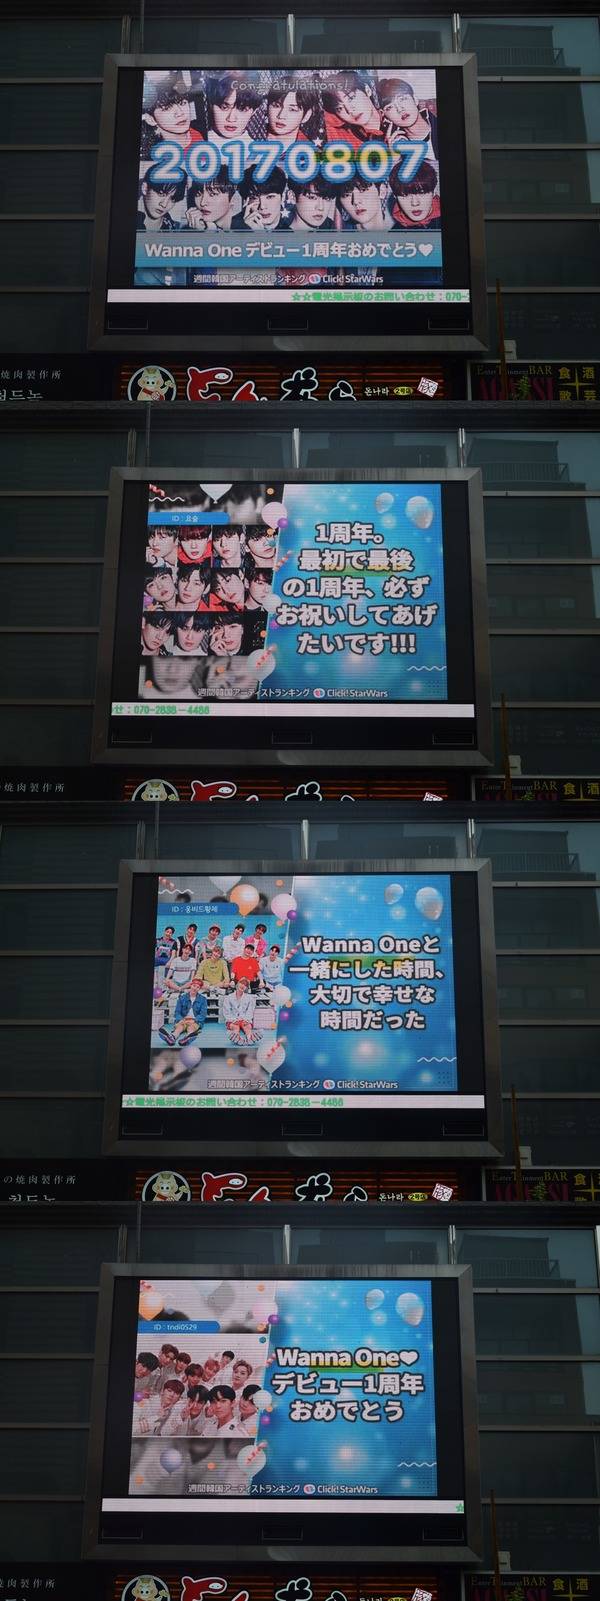 워너원 사랑해 7일 그룹 워너원이 데뷔 1주년을 맞은 가운데 팬들의 축하 메시지가 눈길을 끈다. /클릭스타워즈